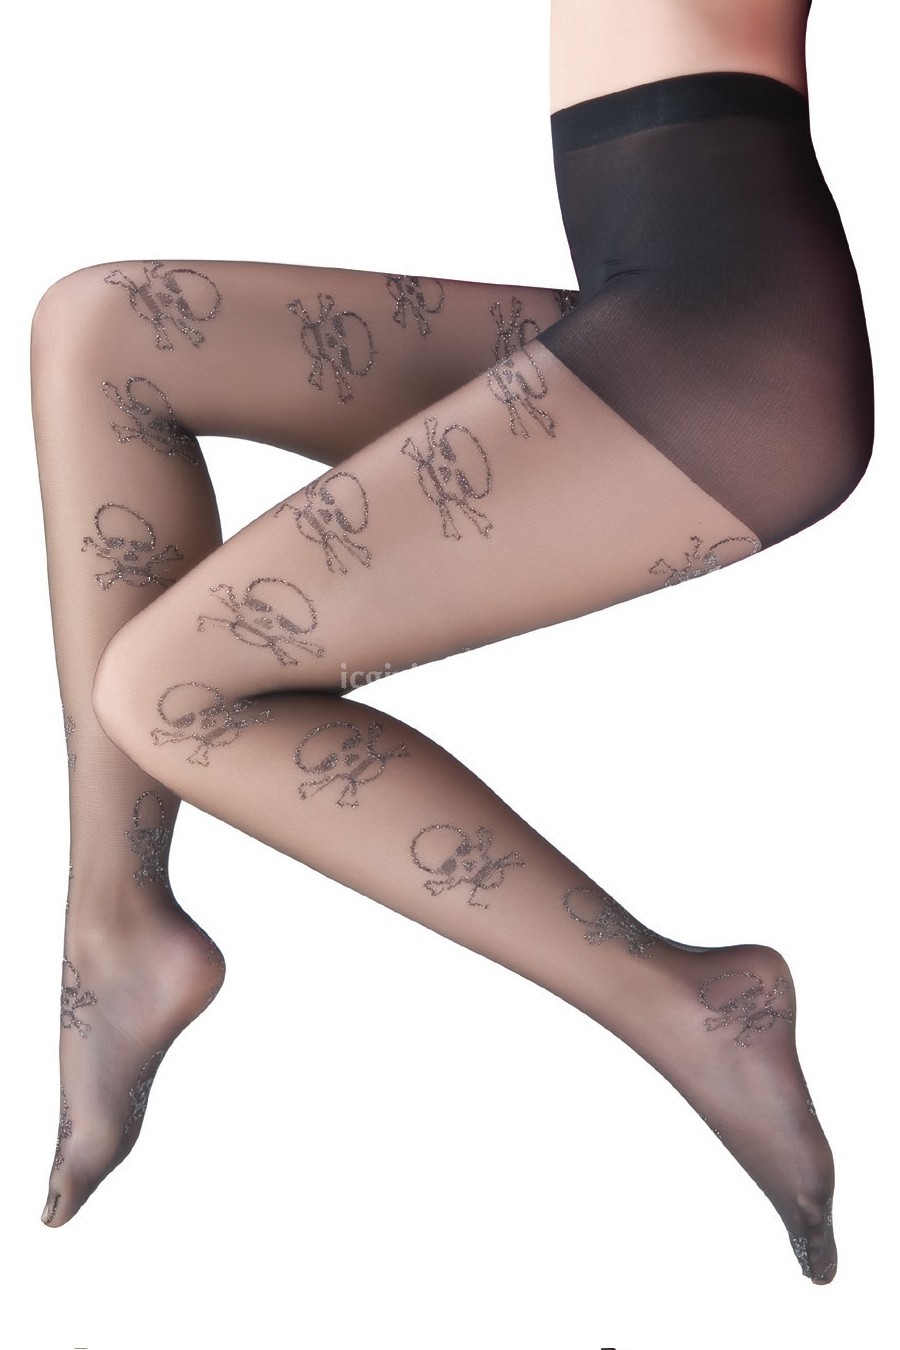 Kurukafa desenli bayan kilotlu çorap modelleri